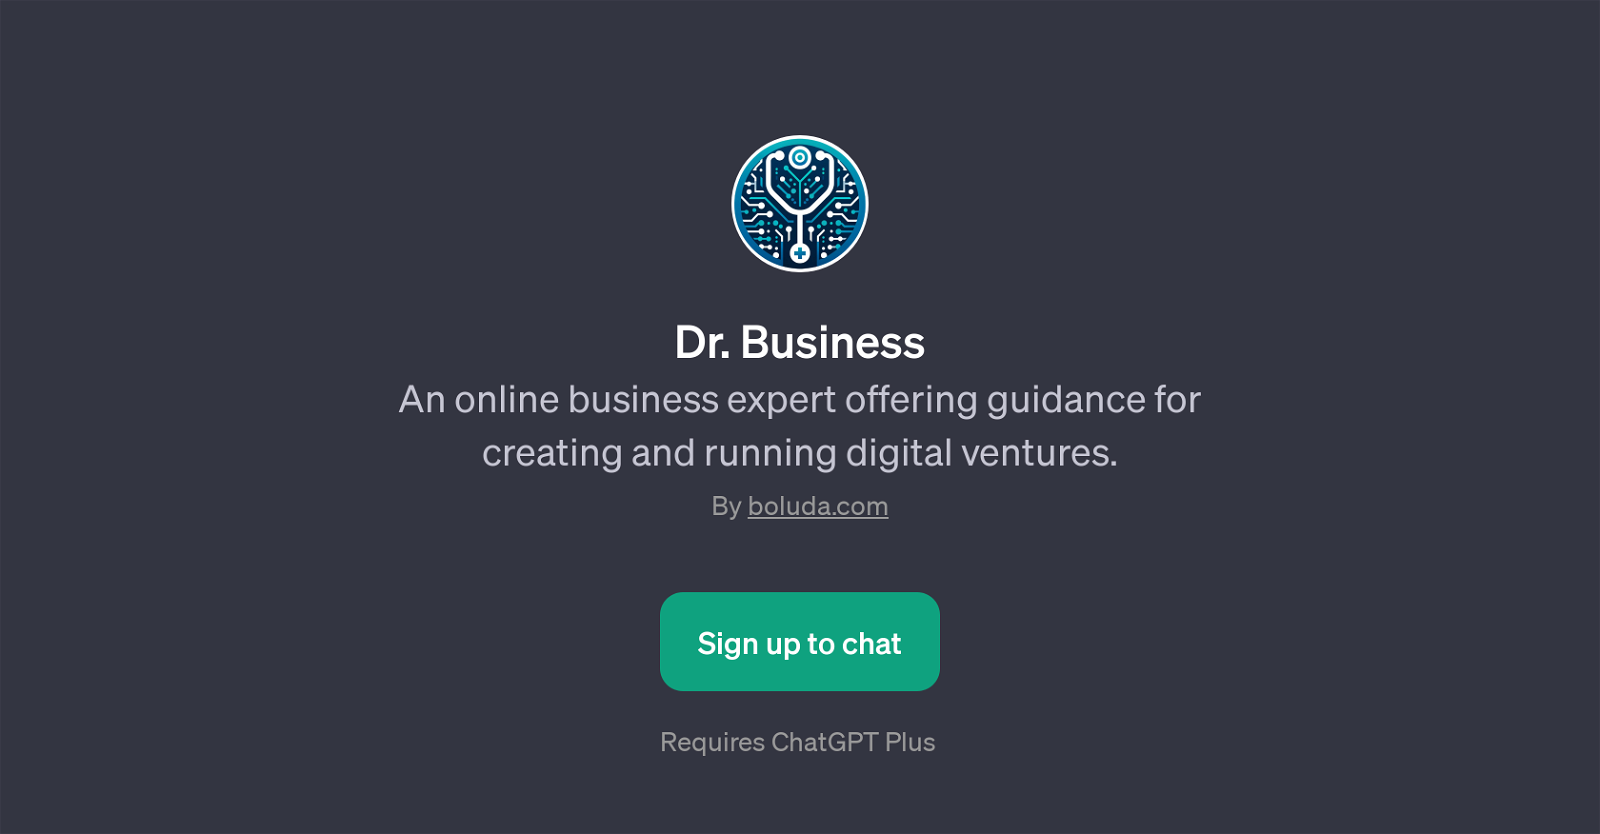 Dr. Business website